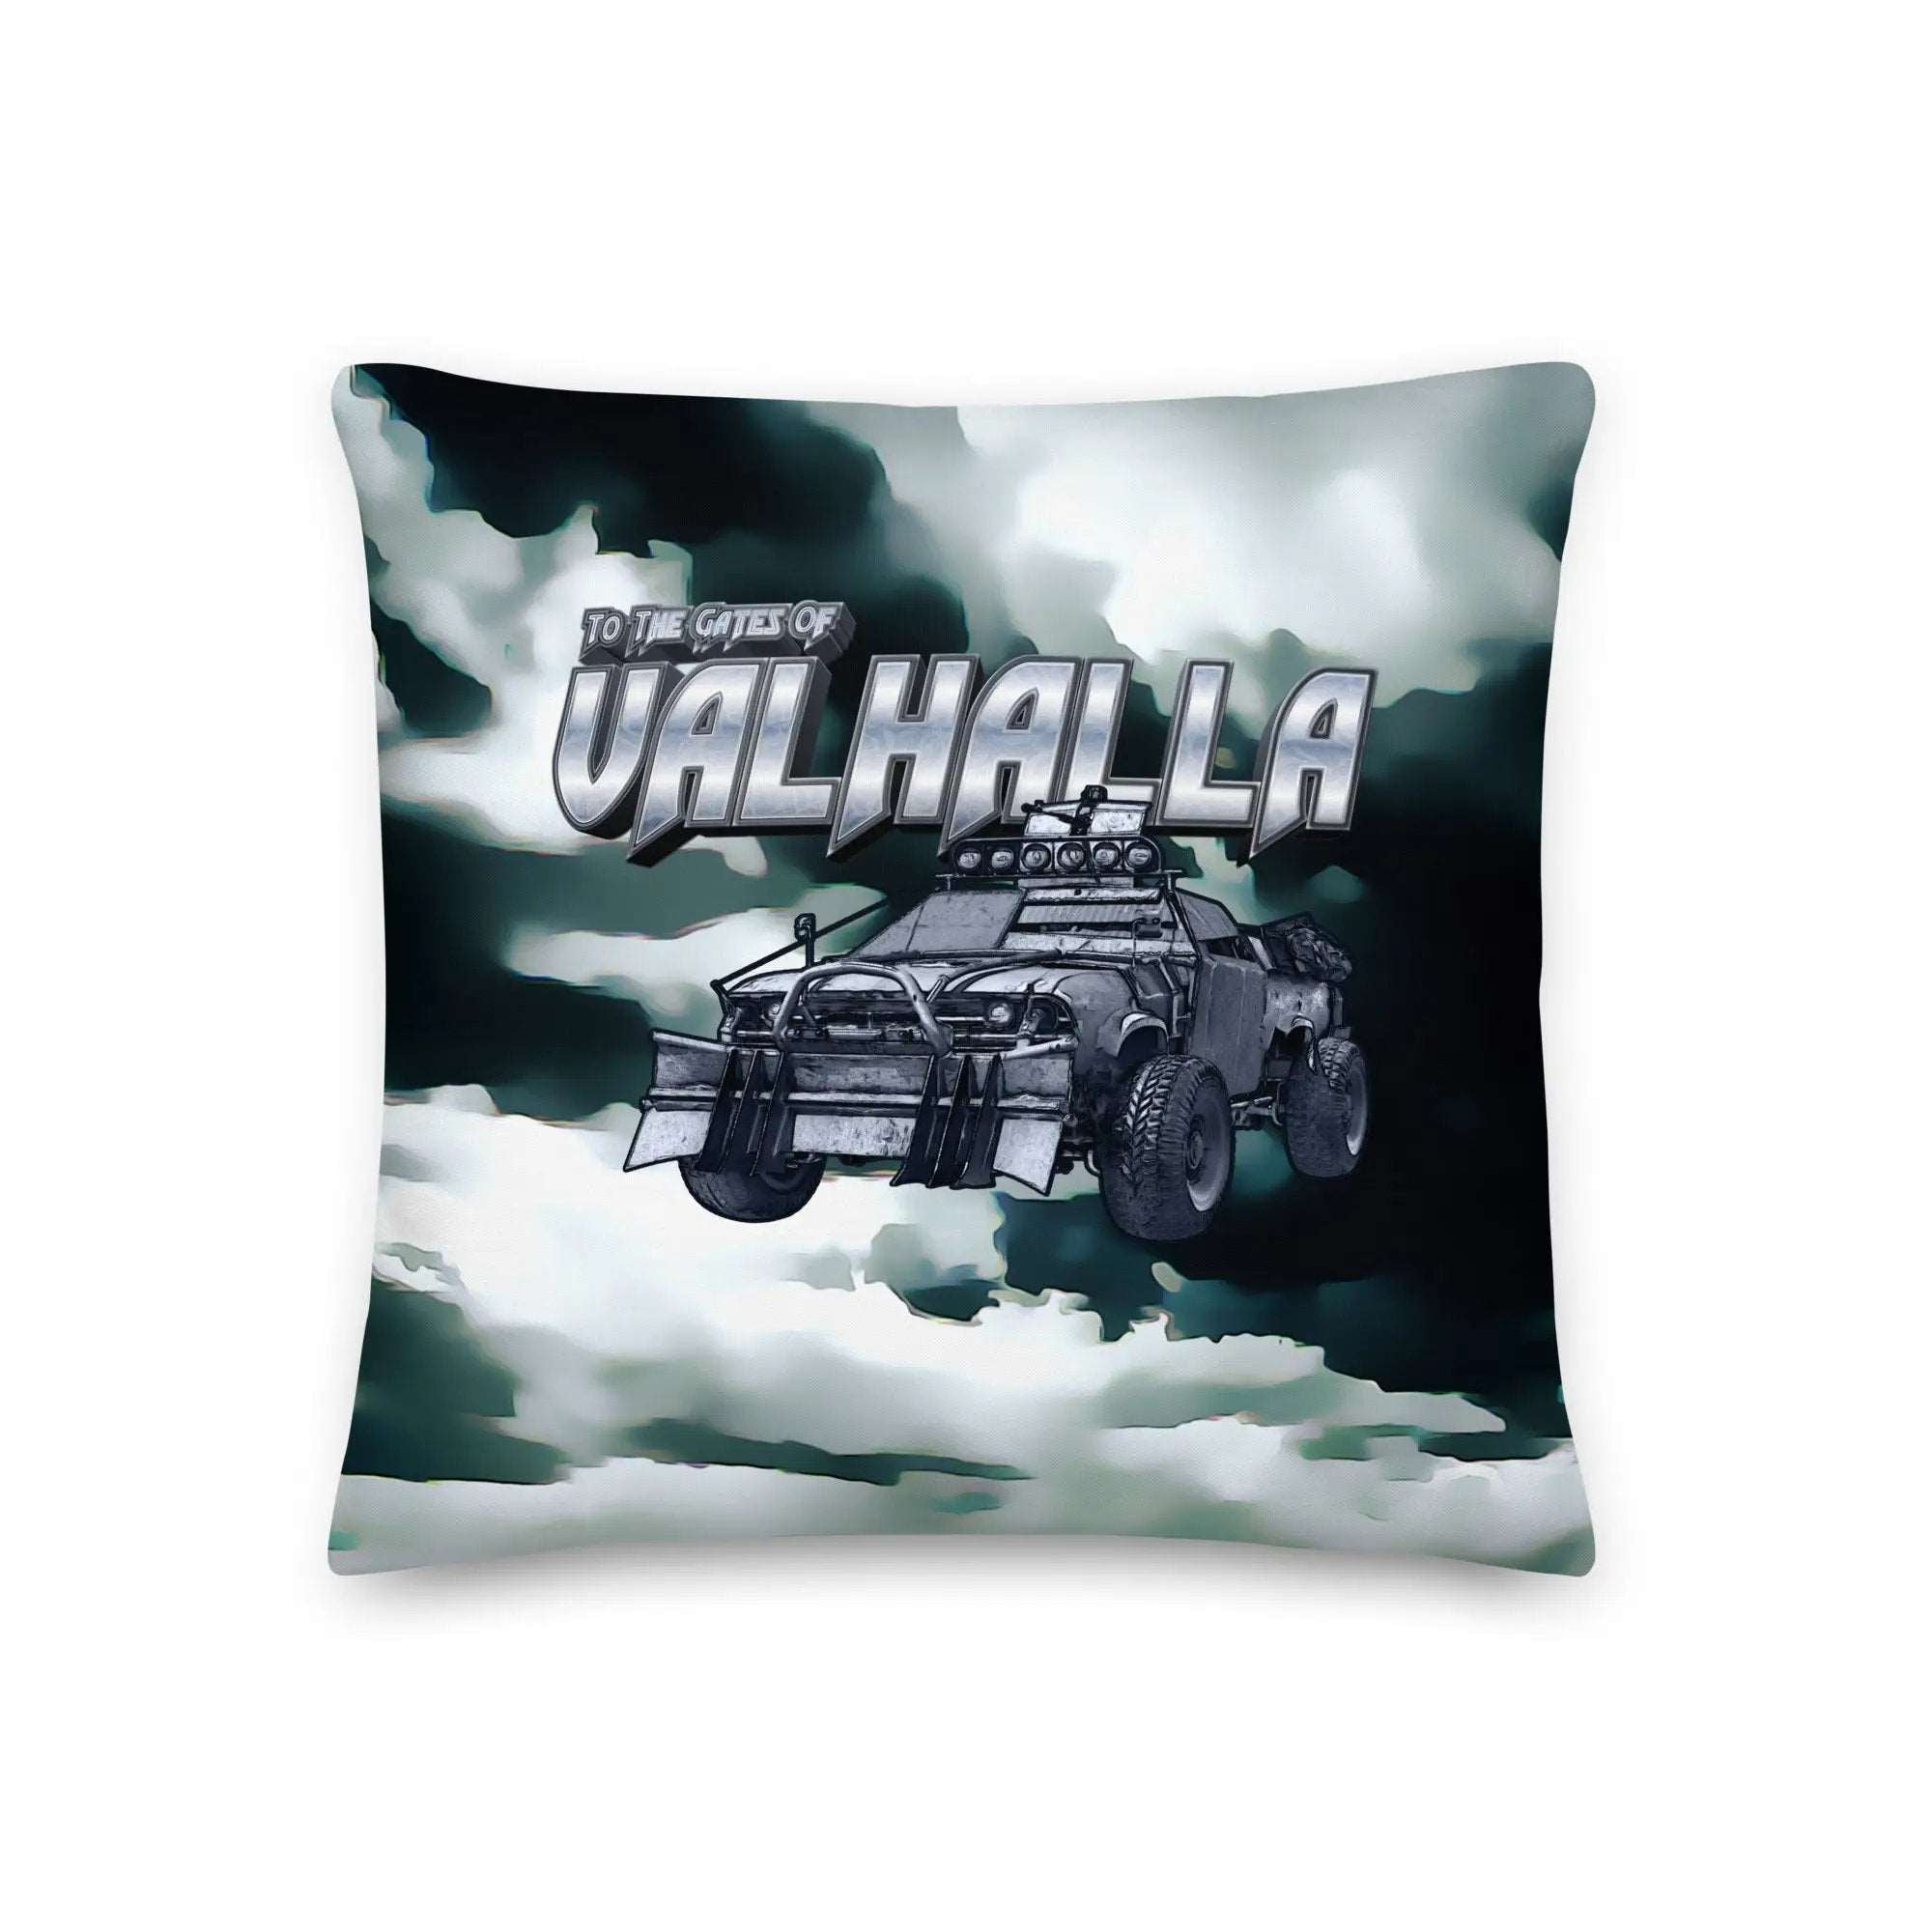 To The Gates of Valhalla Premium Pillow